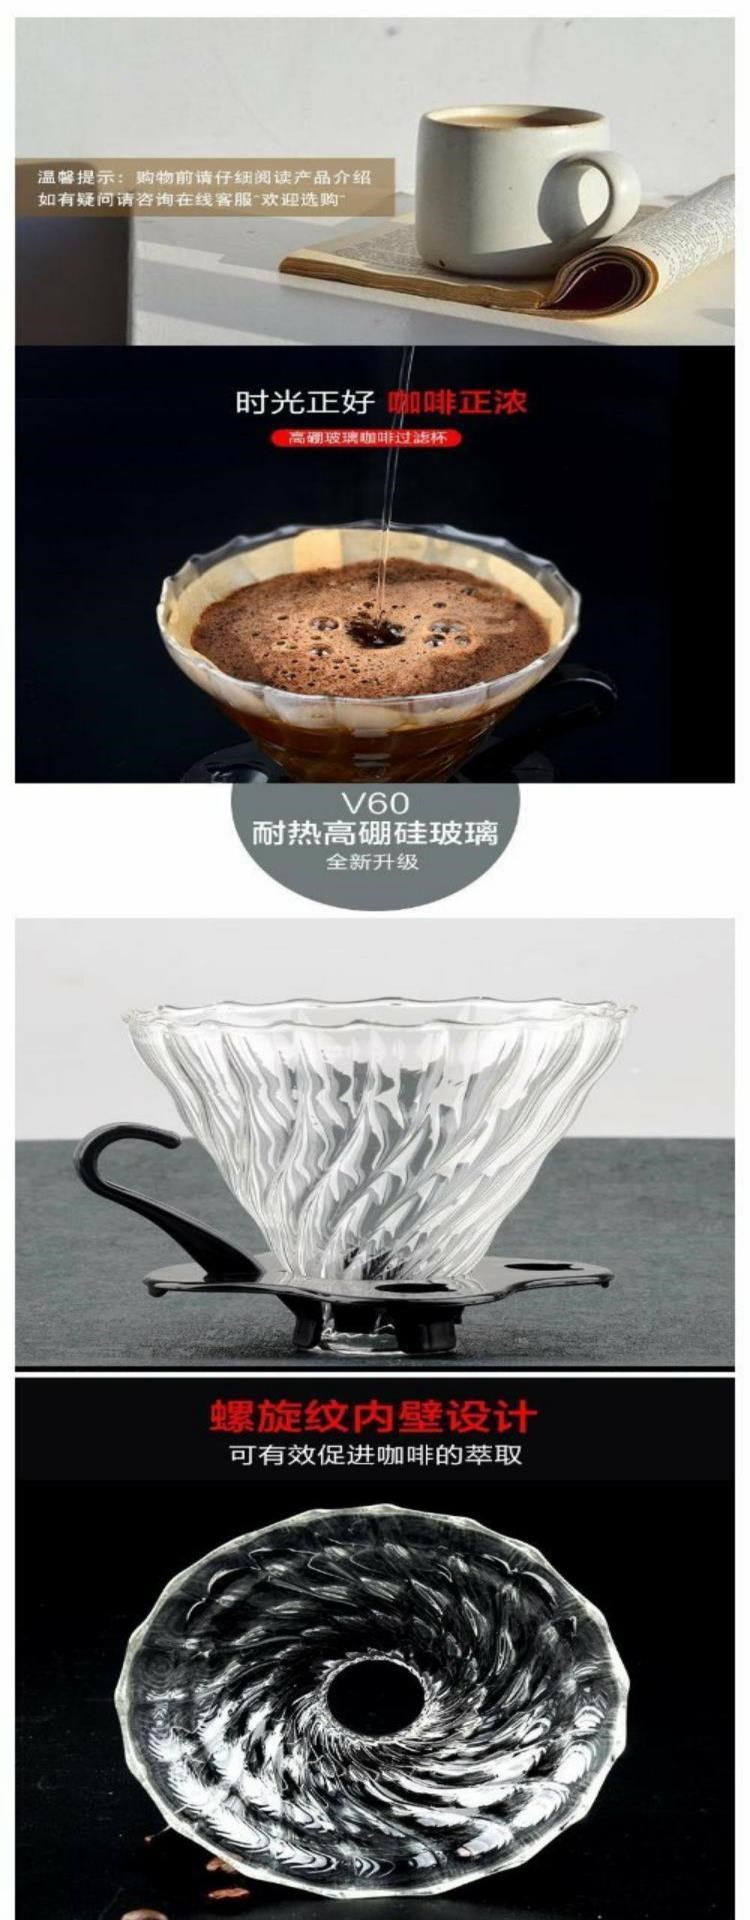 Đặt cốc thủy tinh nhỏ giọt tay cốc cà phê chịu nhiệt kết hợp thiết bị máy lọc cà phê cốc cà phê cốc cà phê v60 - Cà phê